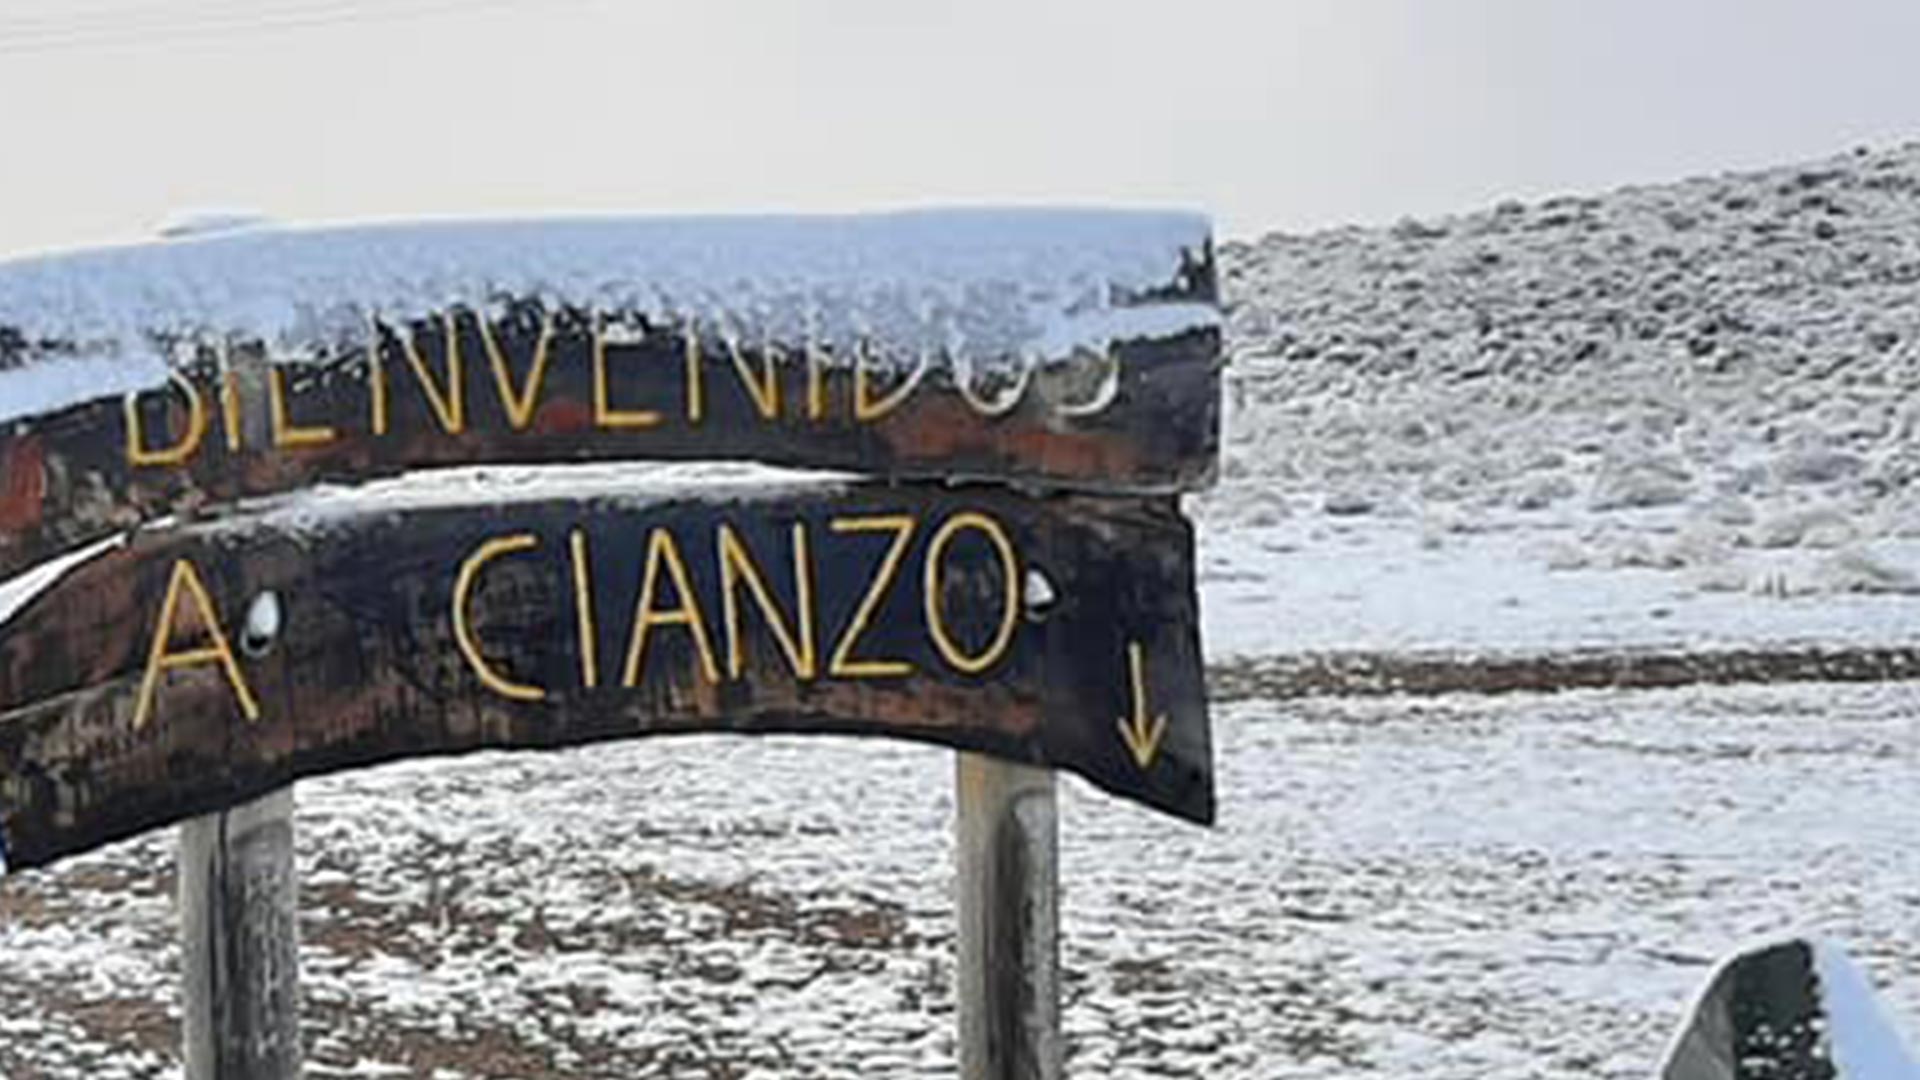 Cianzo está ubicado a 38 km de Humahuaca (Facebook Patricio Lamas)